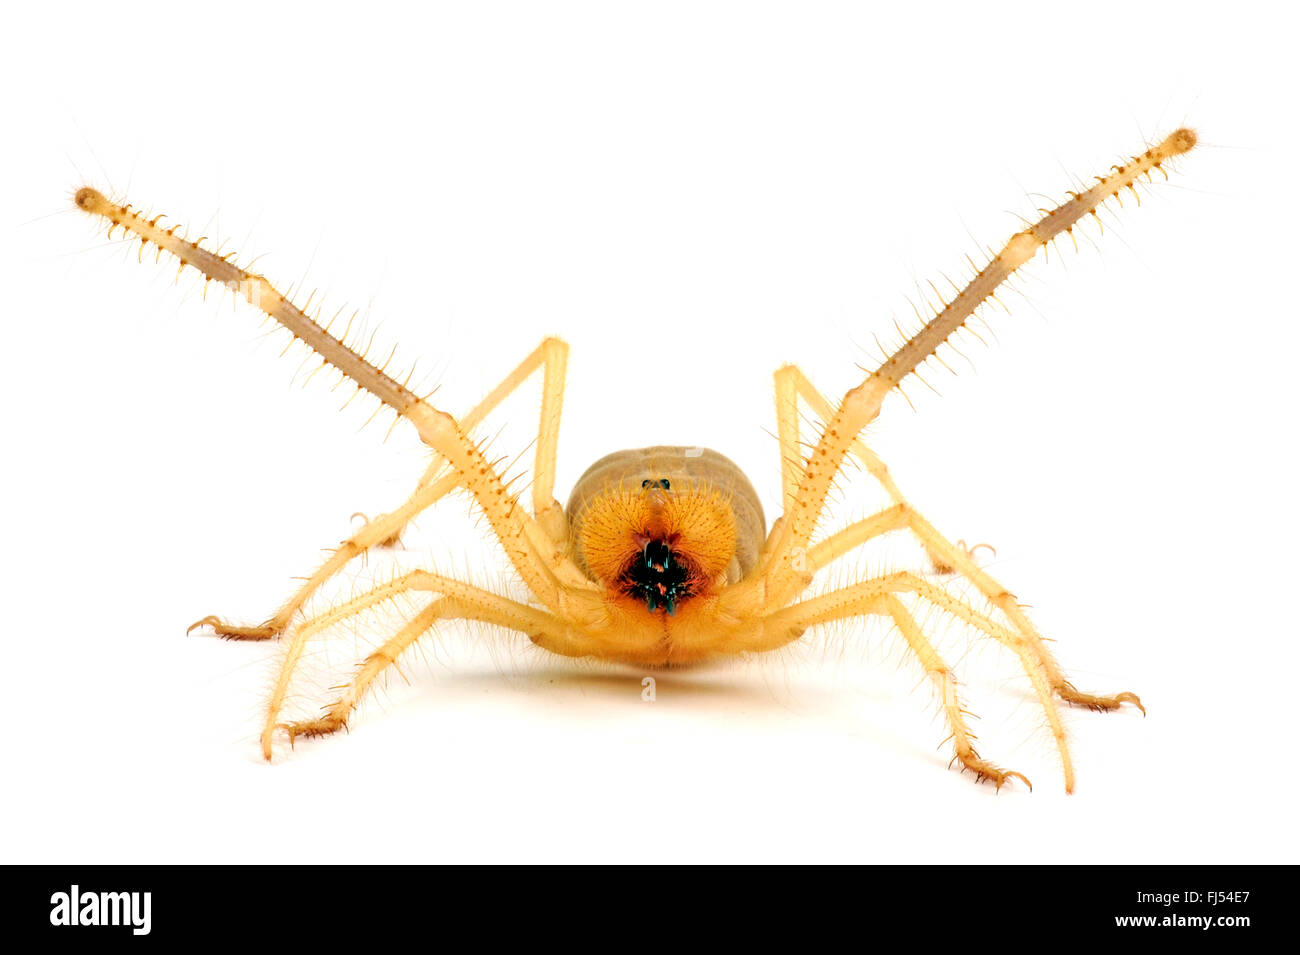 Kamel Spinnen, Skorpione Wind, Sonne Spinnen, Walzenspinnenfauna (Galeodes Granti), in der Verteidigung Haltung, Ausschnitt Stockfoto